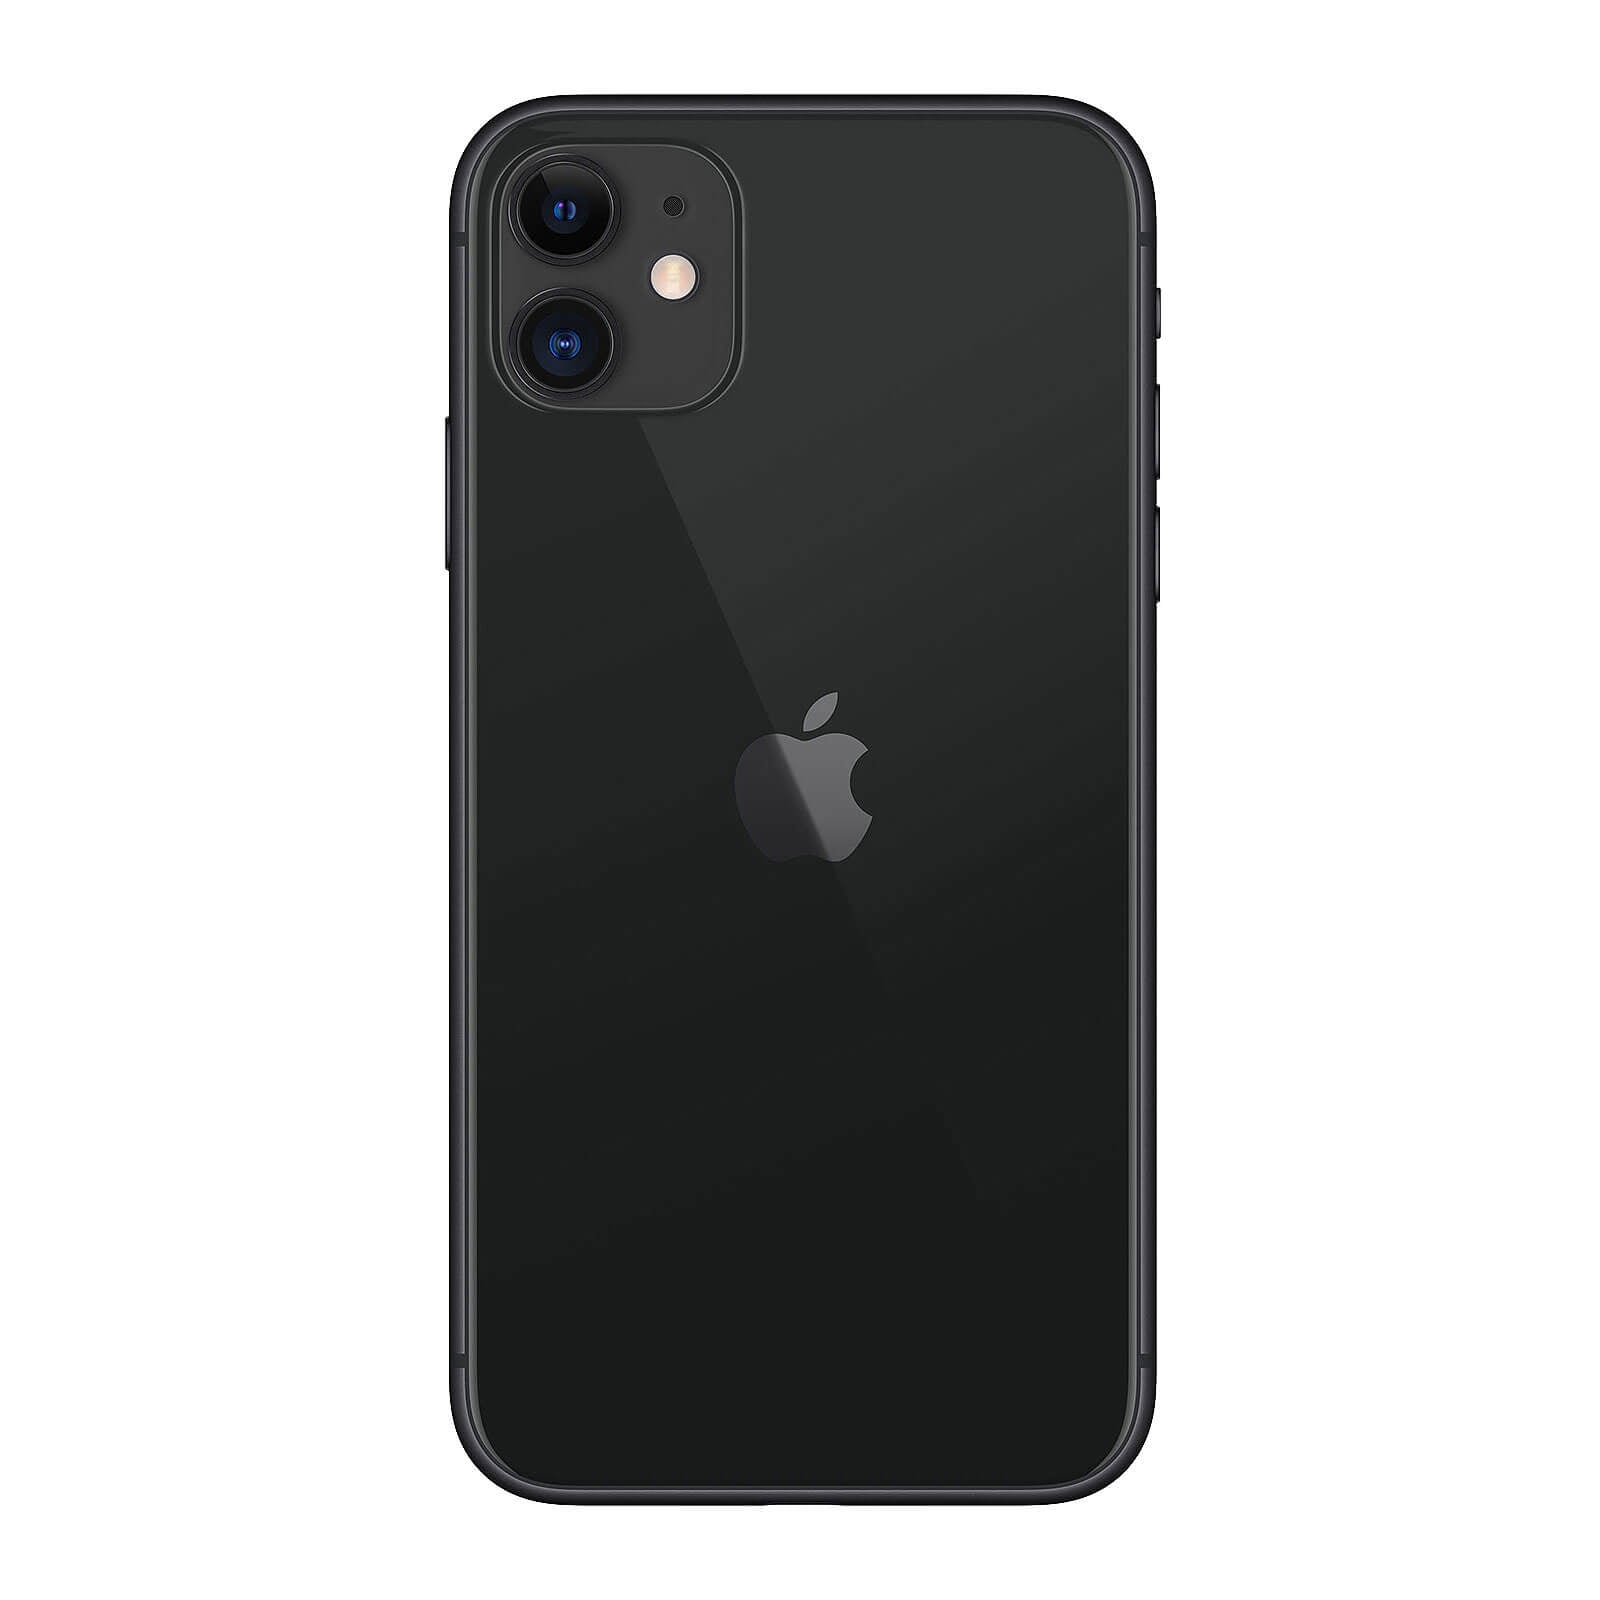 Apple iPhone 11 128GB Black Fair - AT&T